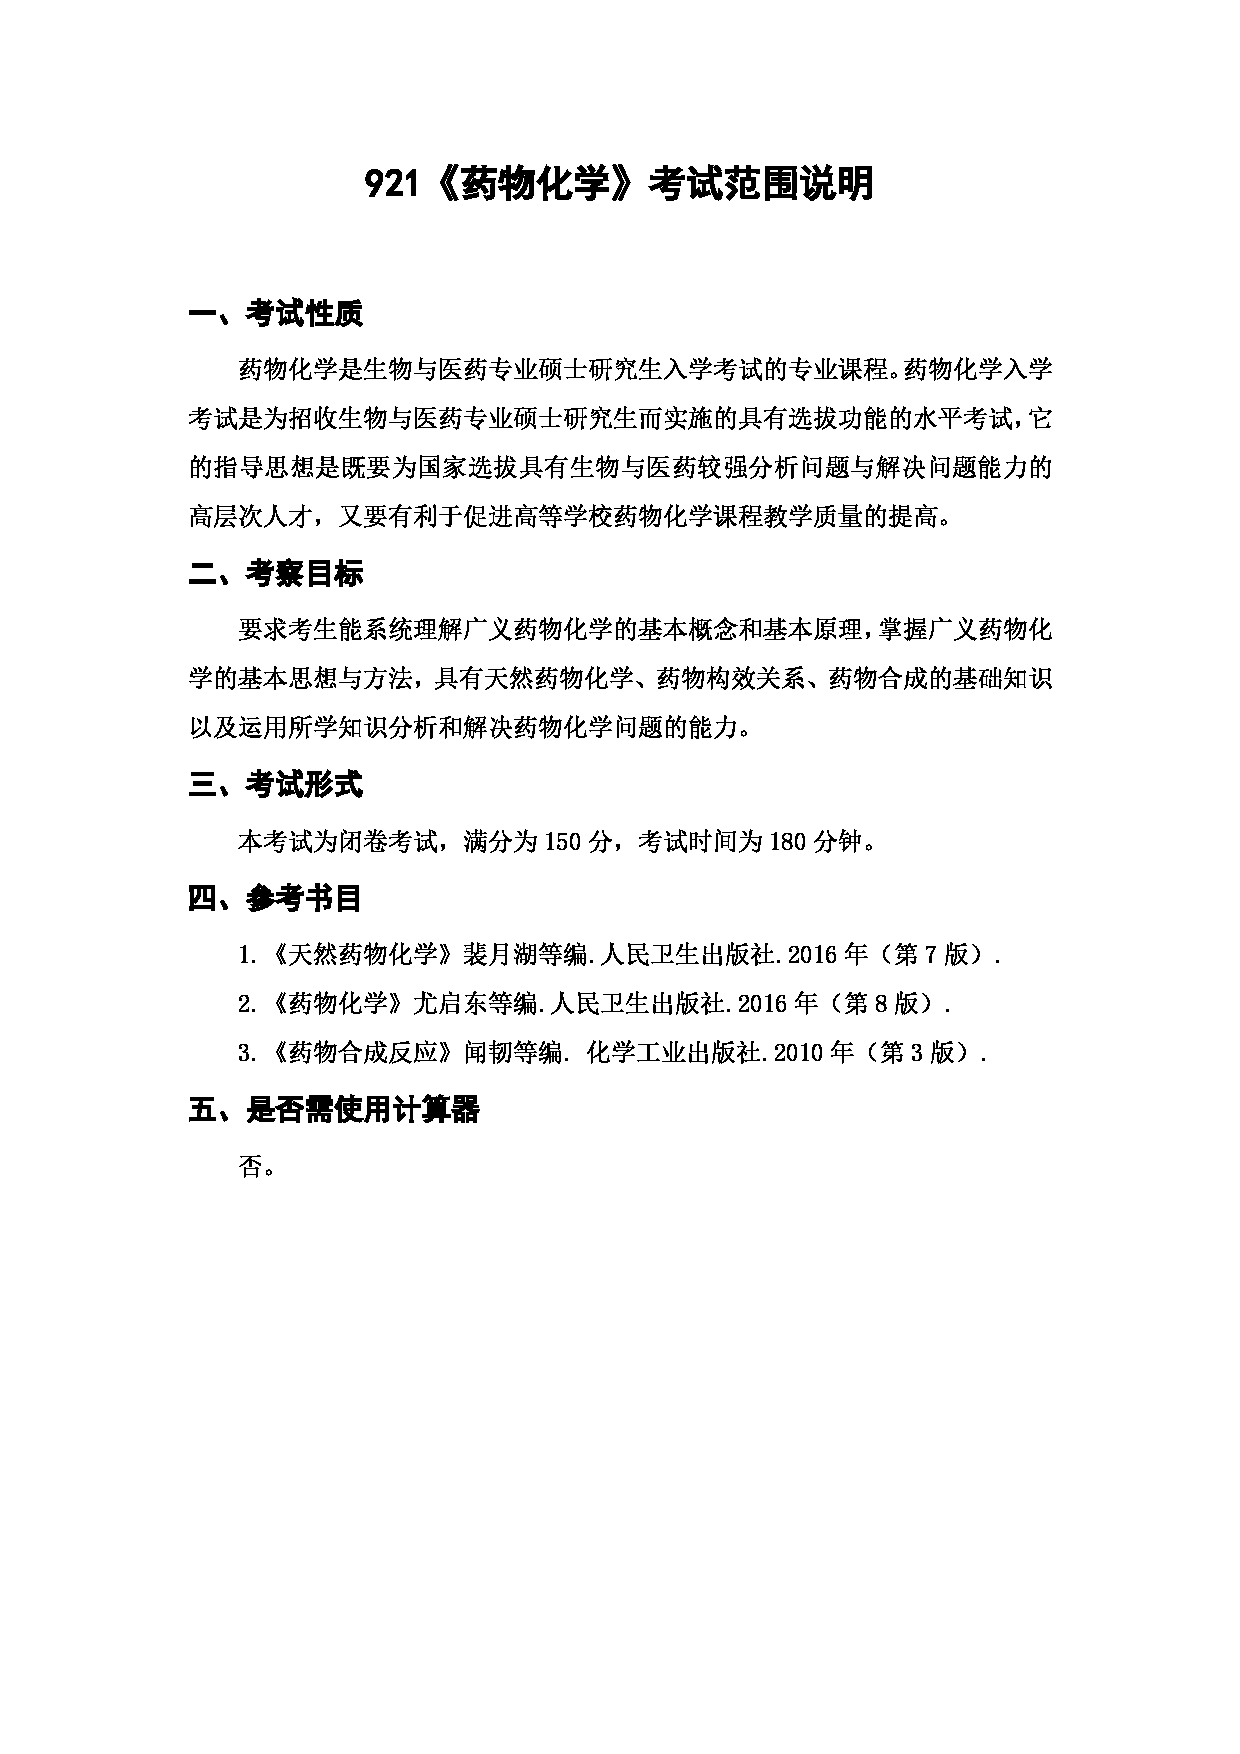 上海海洋大学2023年考研自命题科目 921《药物化学》 考试范围第1页